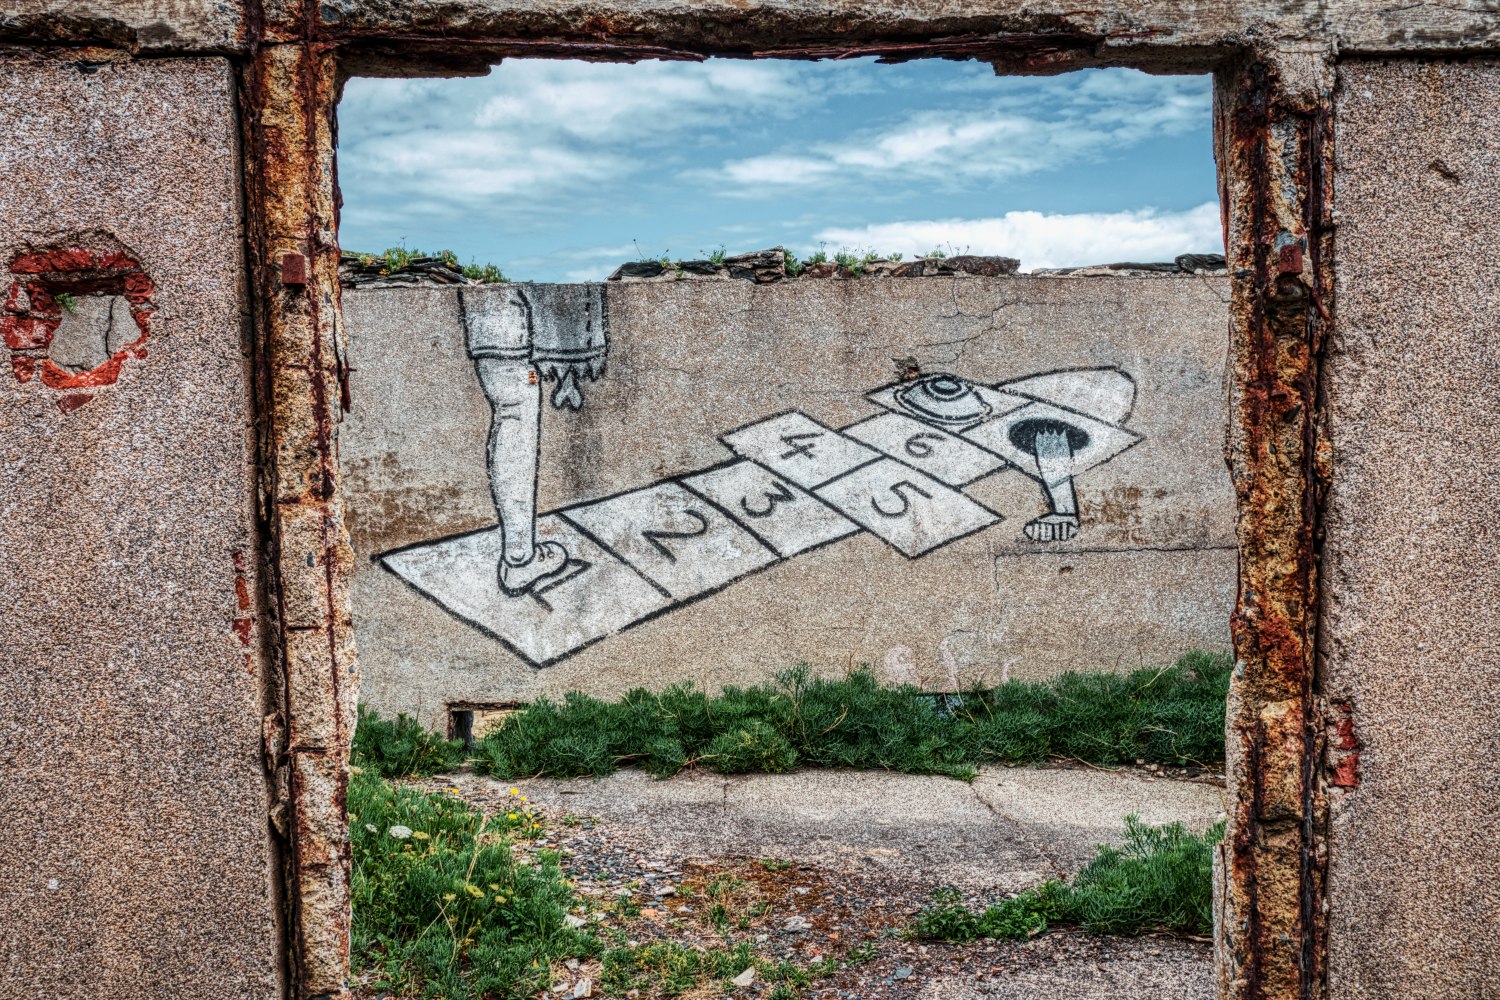 Einige Ruinenteile der "Îlot des Capucins" wurden mit teilweise gruseligen Grafittis verziert